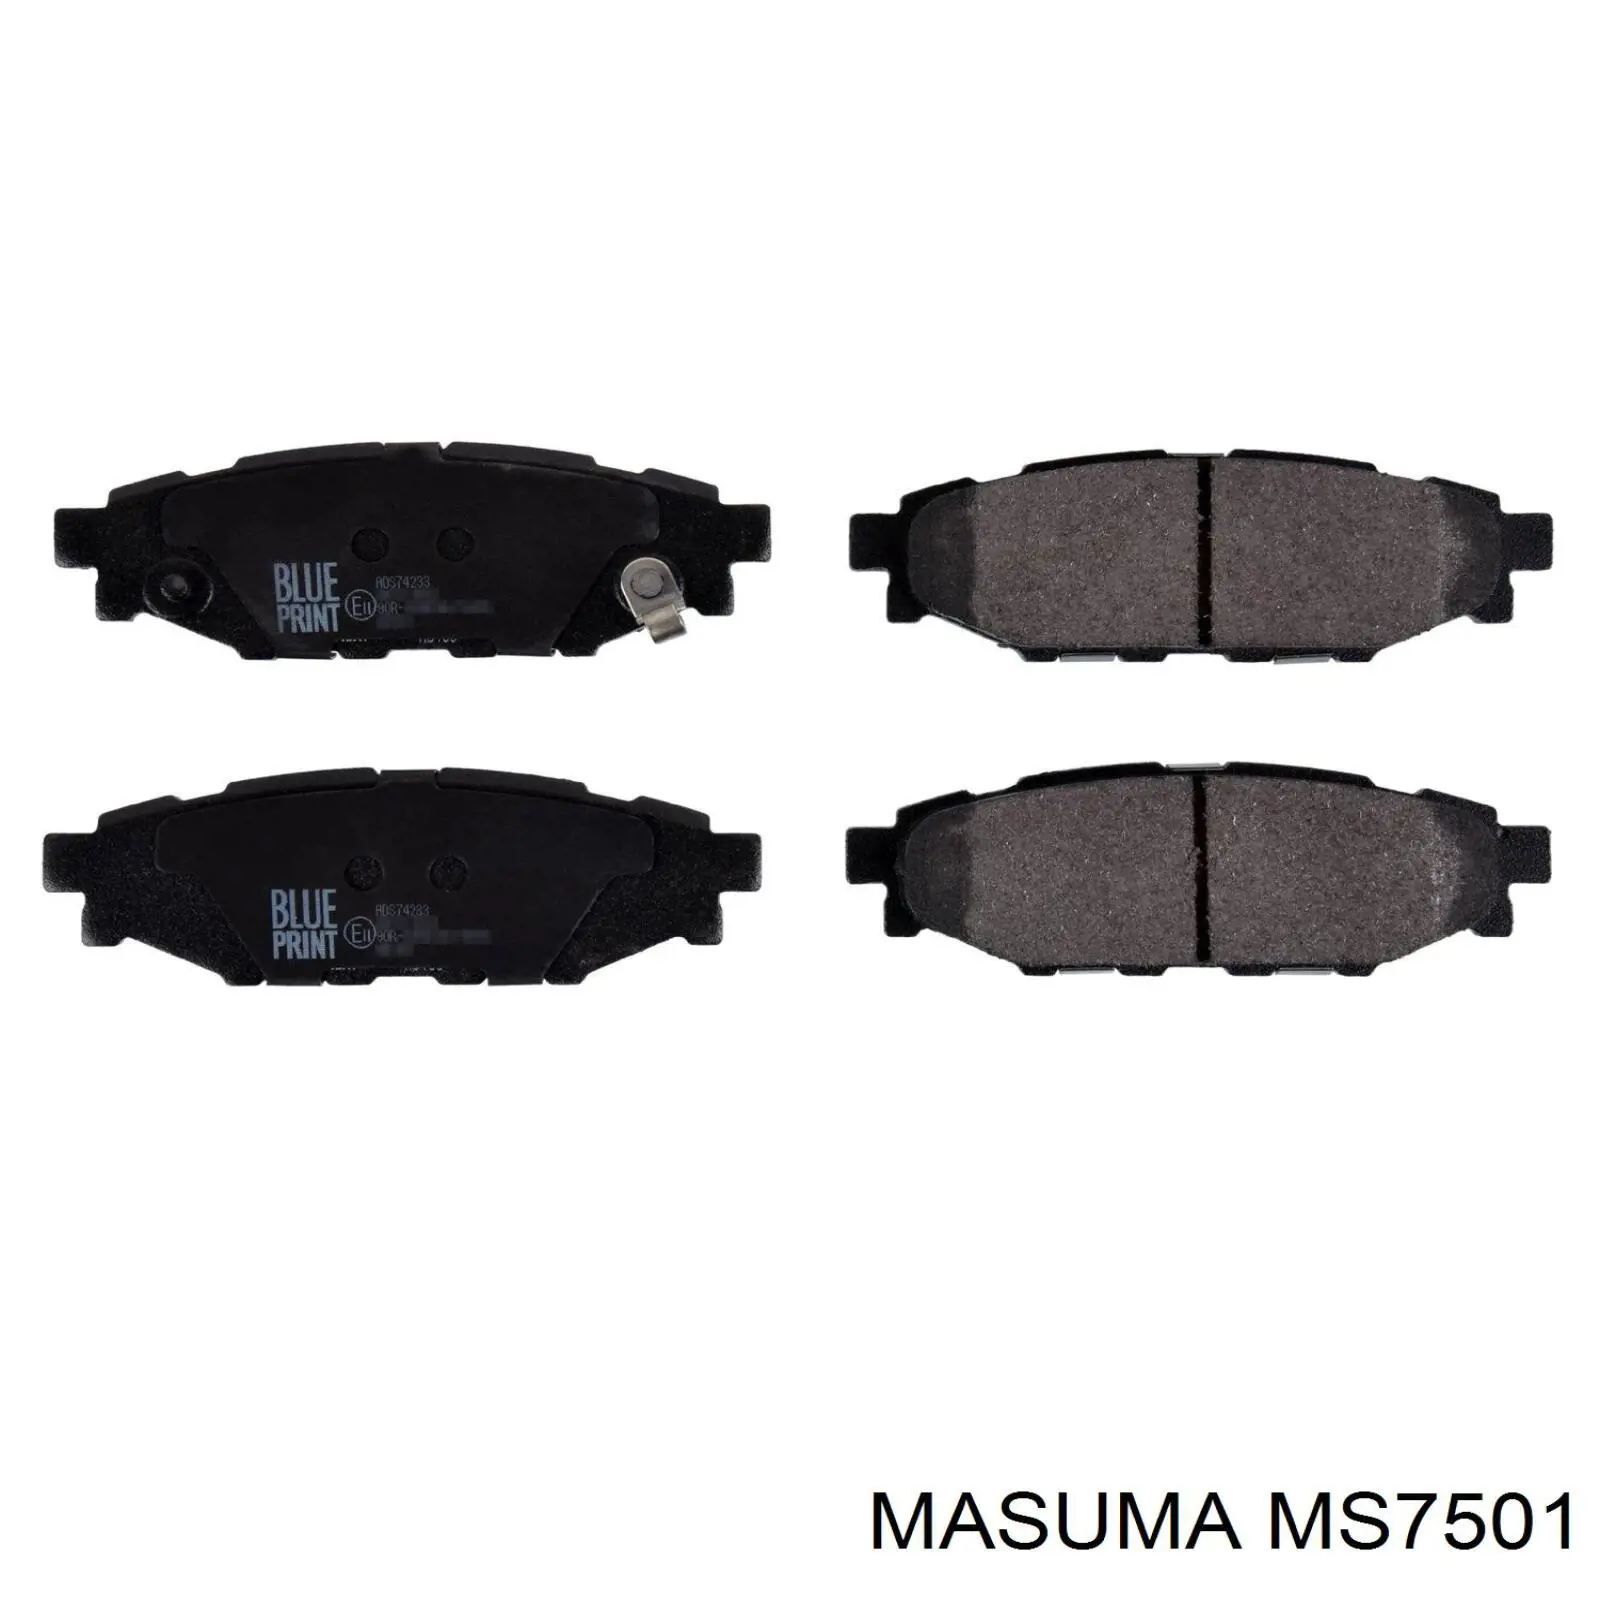 MS7501 Masuma задние тормозные колодки